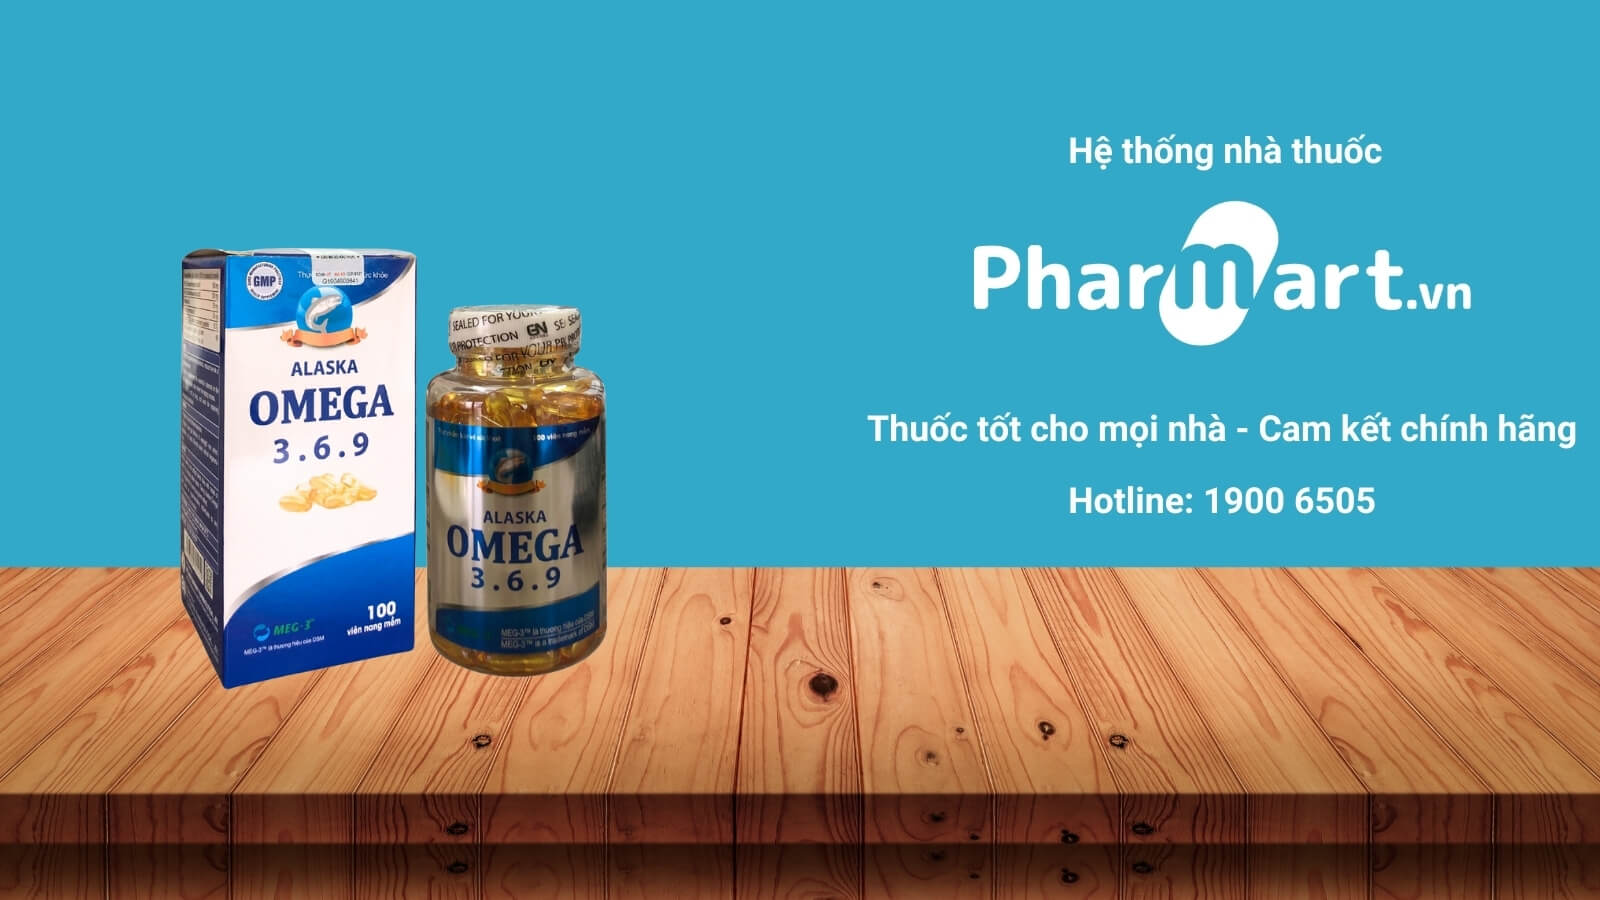 Mua Omega 3.6.9 Việt Đức chính hãng tại Pharmart.vn